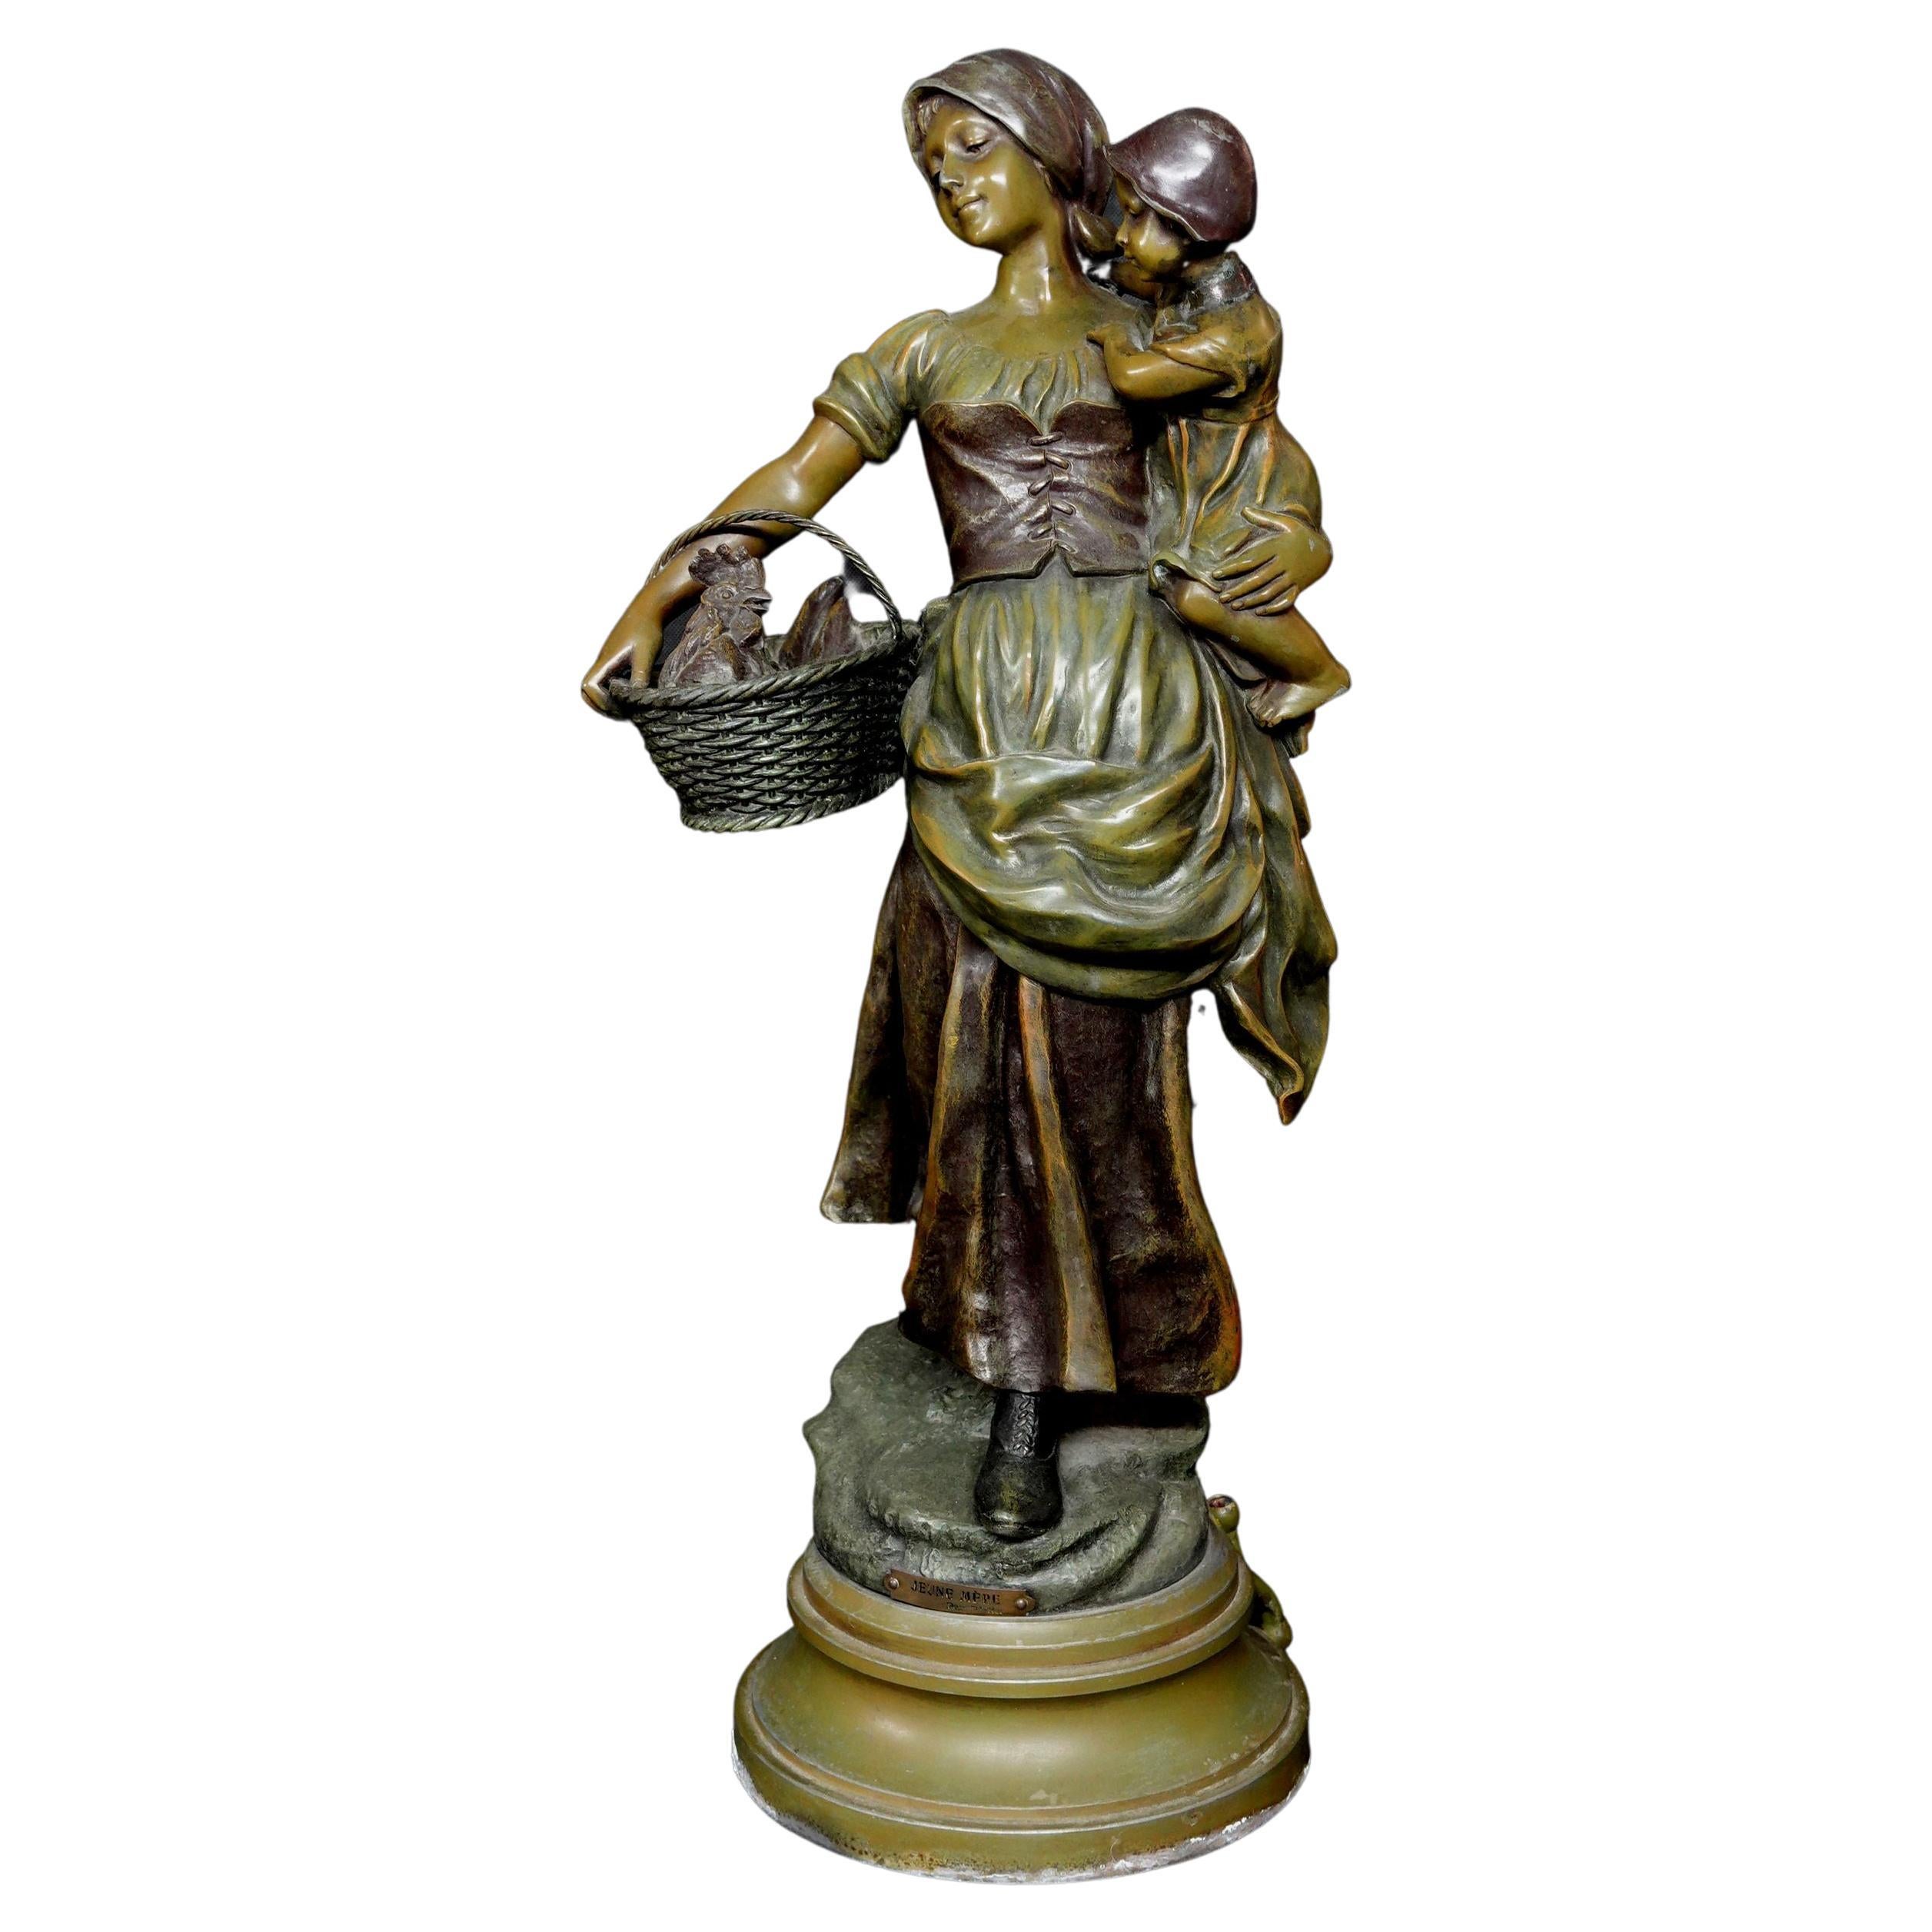 Robert Pfeffer, Bronze Metal Sculpture "Jeune Mere"Maiden with Child, Ric069